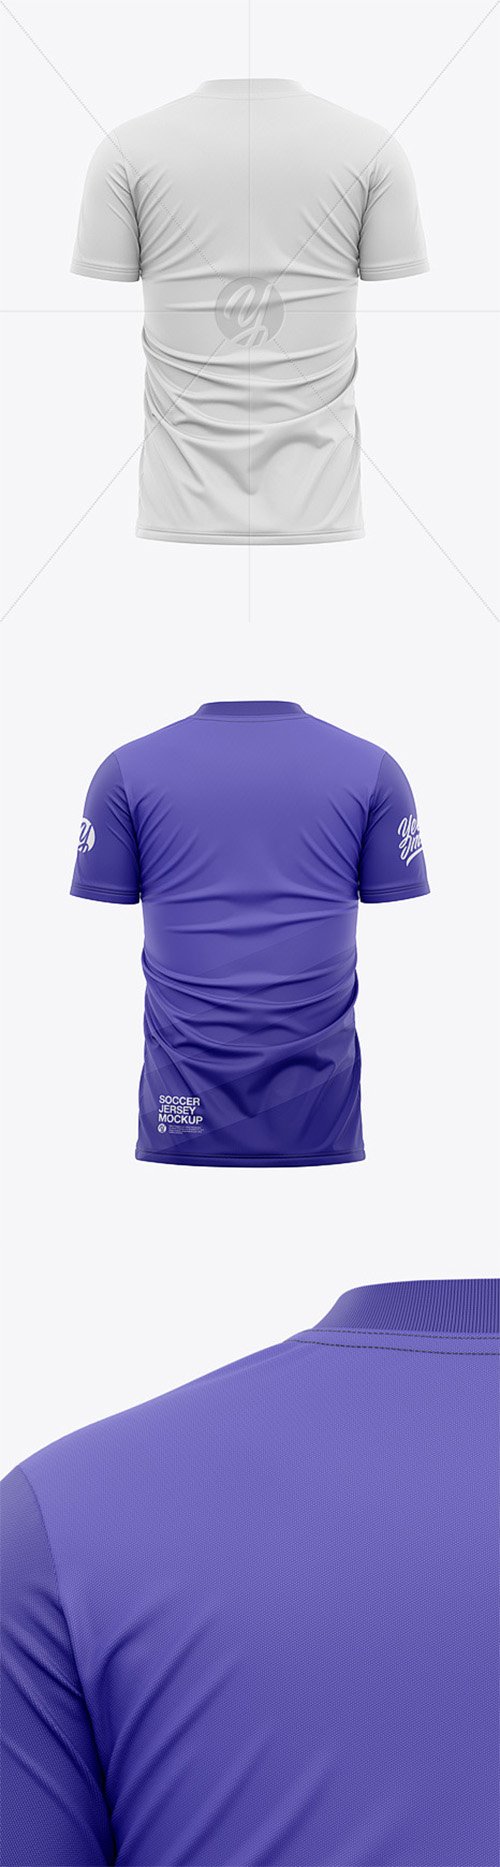 Men’s Soccer Jersey T-shirt Mockup - Back View - Football Jersey Soccer T-shirt 55616